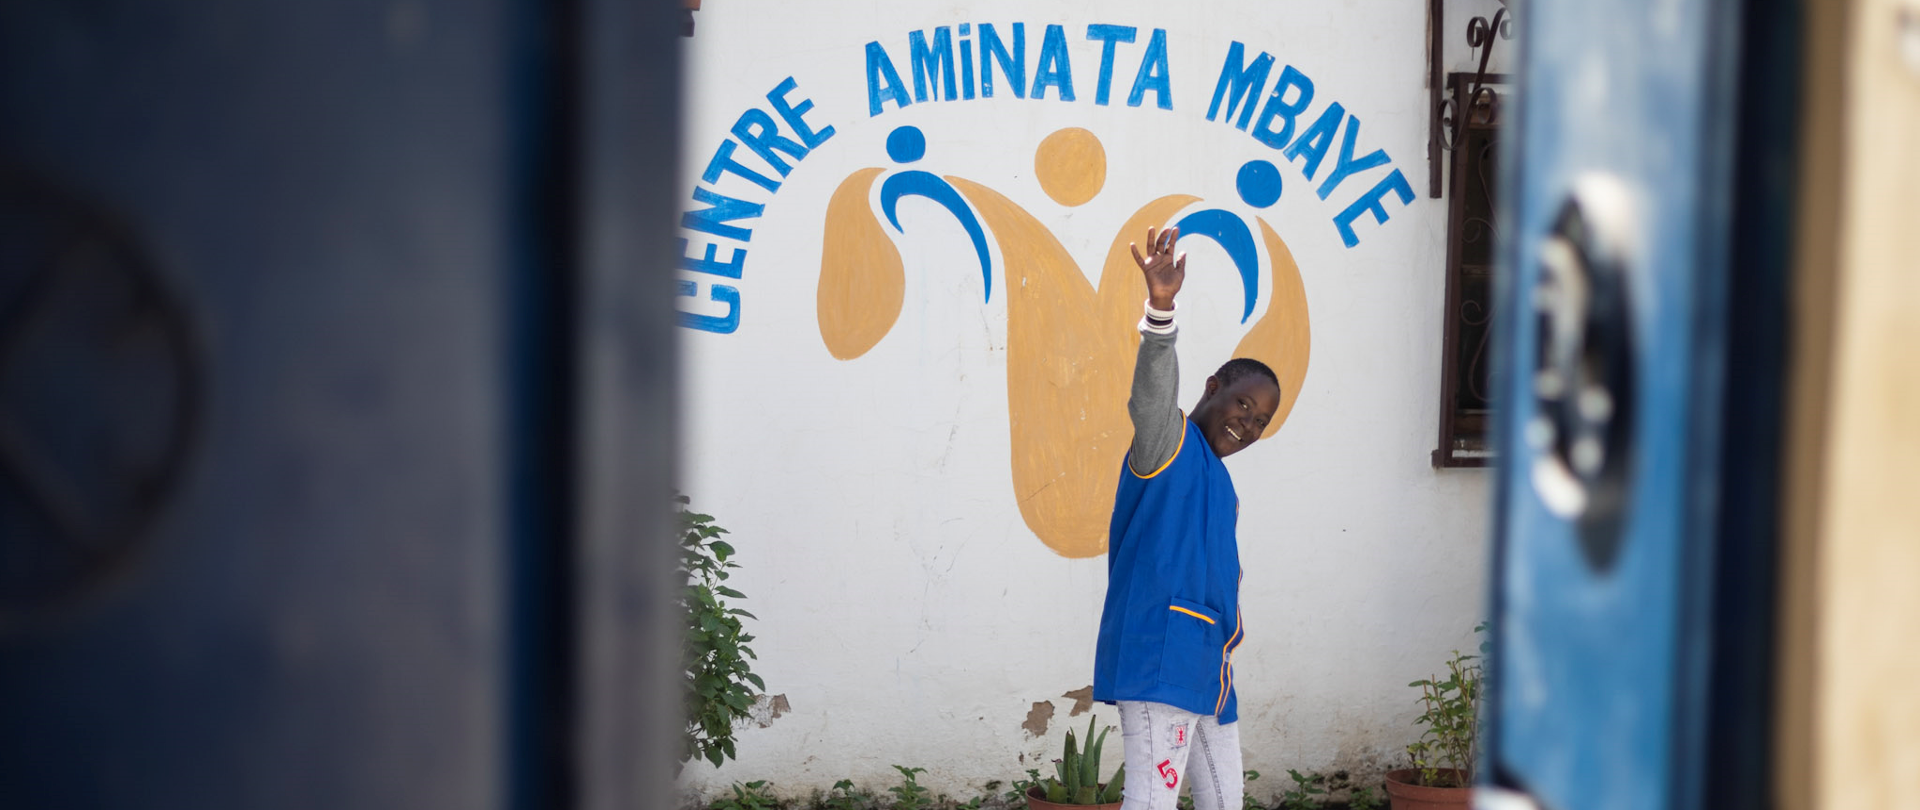 Poprawa możliwości wsparcia integracji społecznej dzieci i młodzieży z niepełnosprawnością umysłową w Centrum Aminata Mbaye w Saint Louis fot. Amb.RP w Dakarze